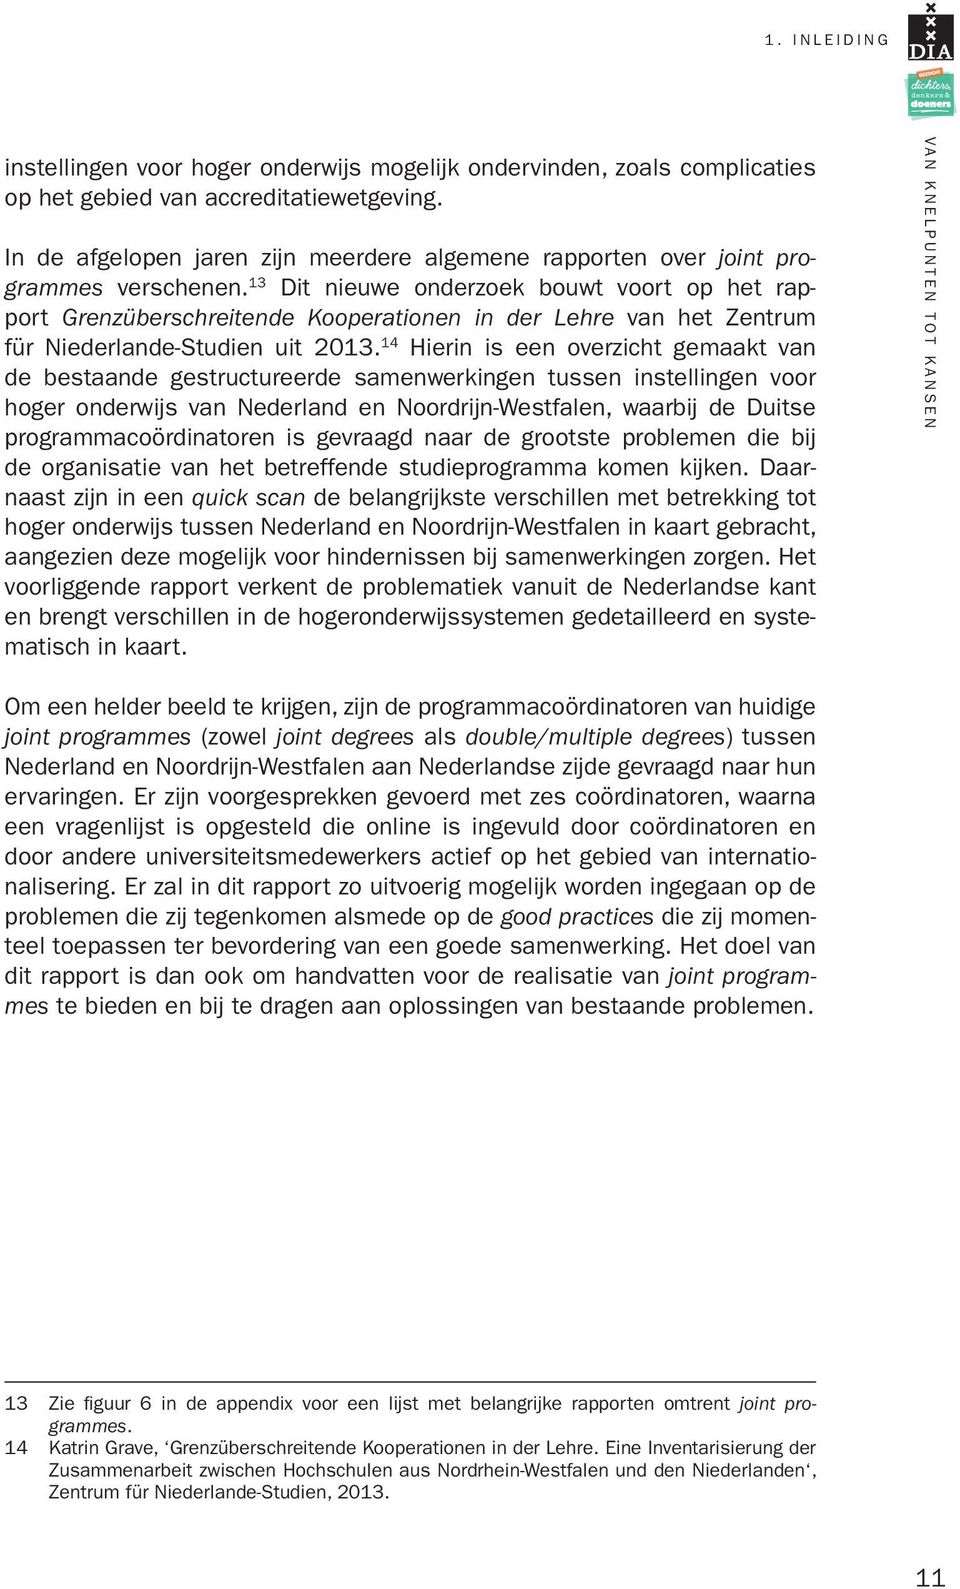 13 Dit nieuwe onderzoek bouwt voort op het rapport Grenzüberschreitende Kooperationen in der Lehre van het Zentrum für Niederlande-Studien uit 2013.